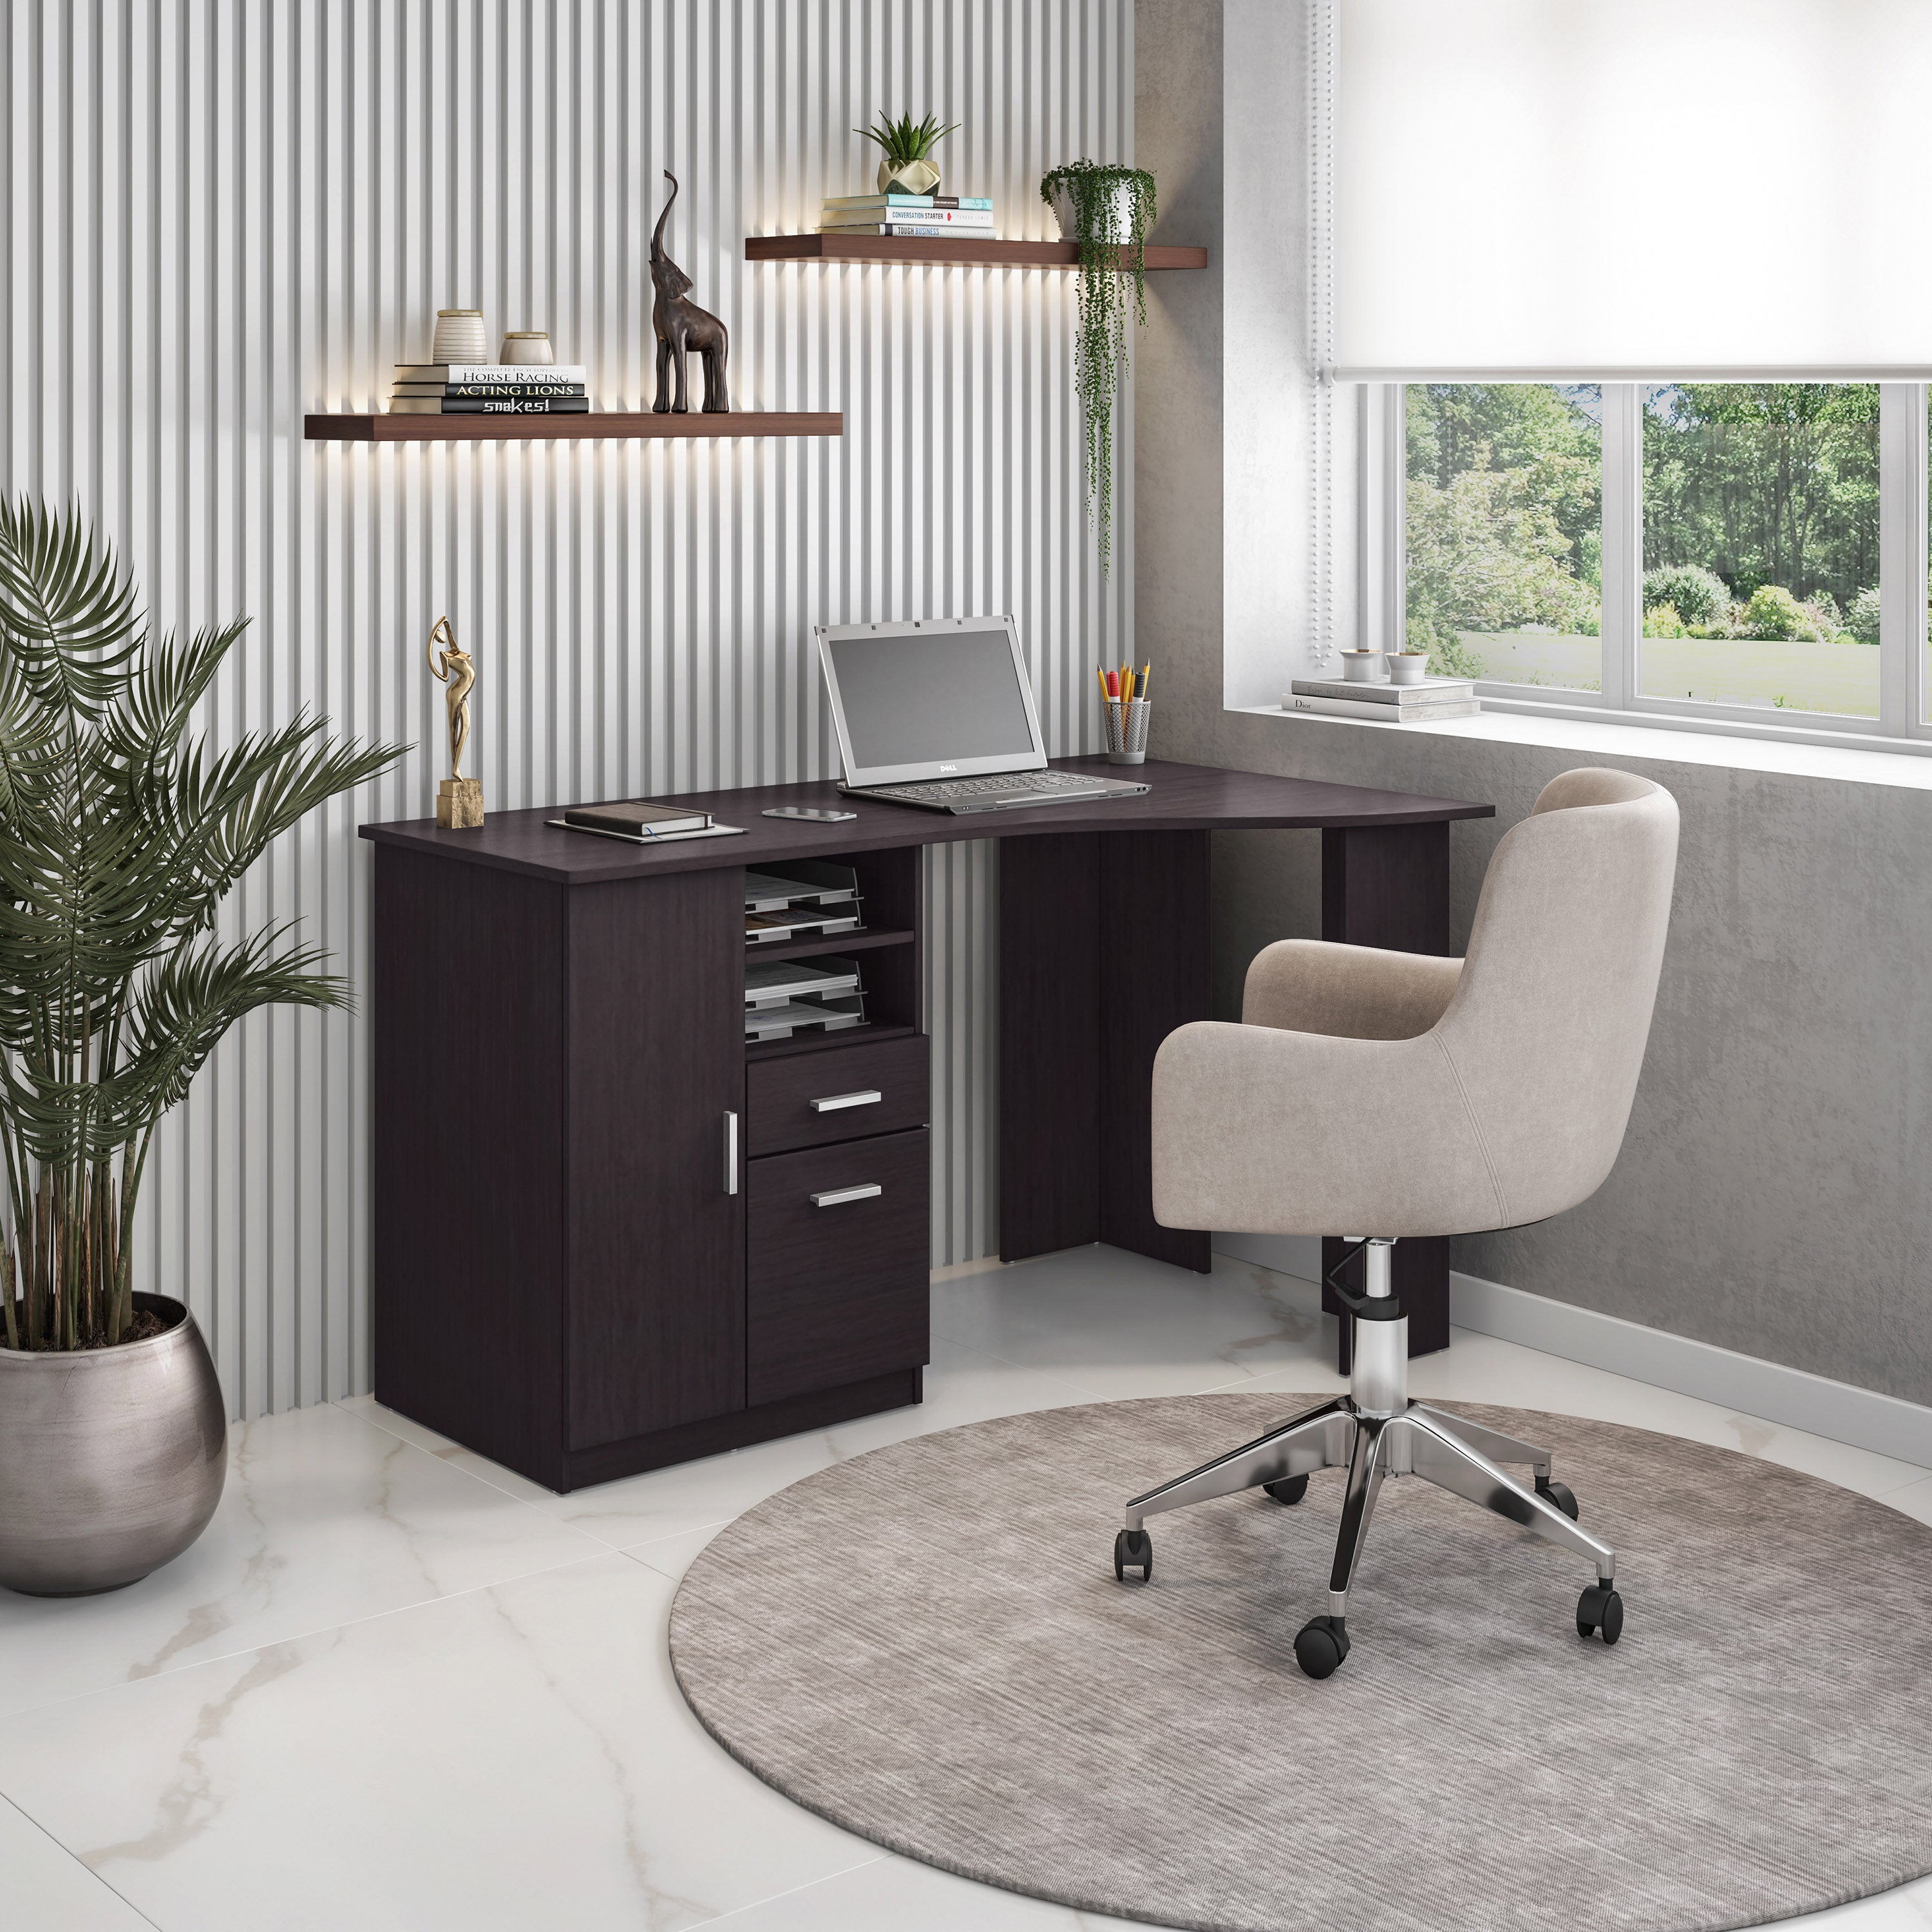 Classic Office Desk with Storage Gray - Techni Mobili